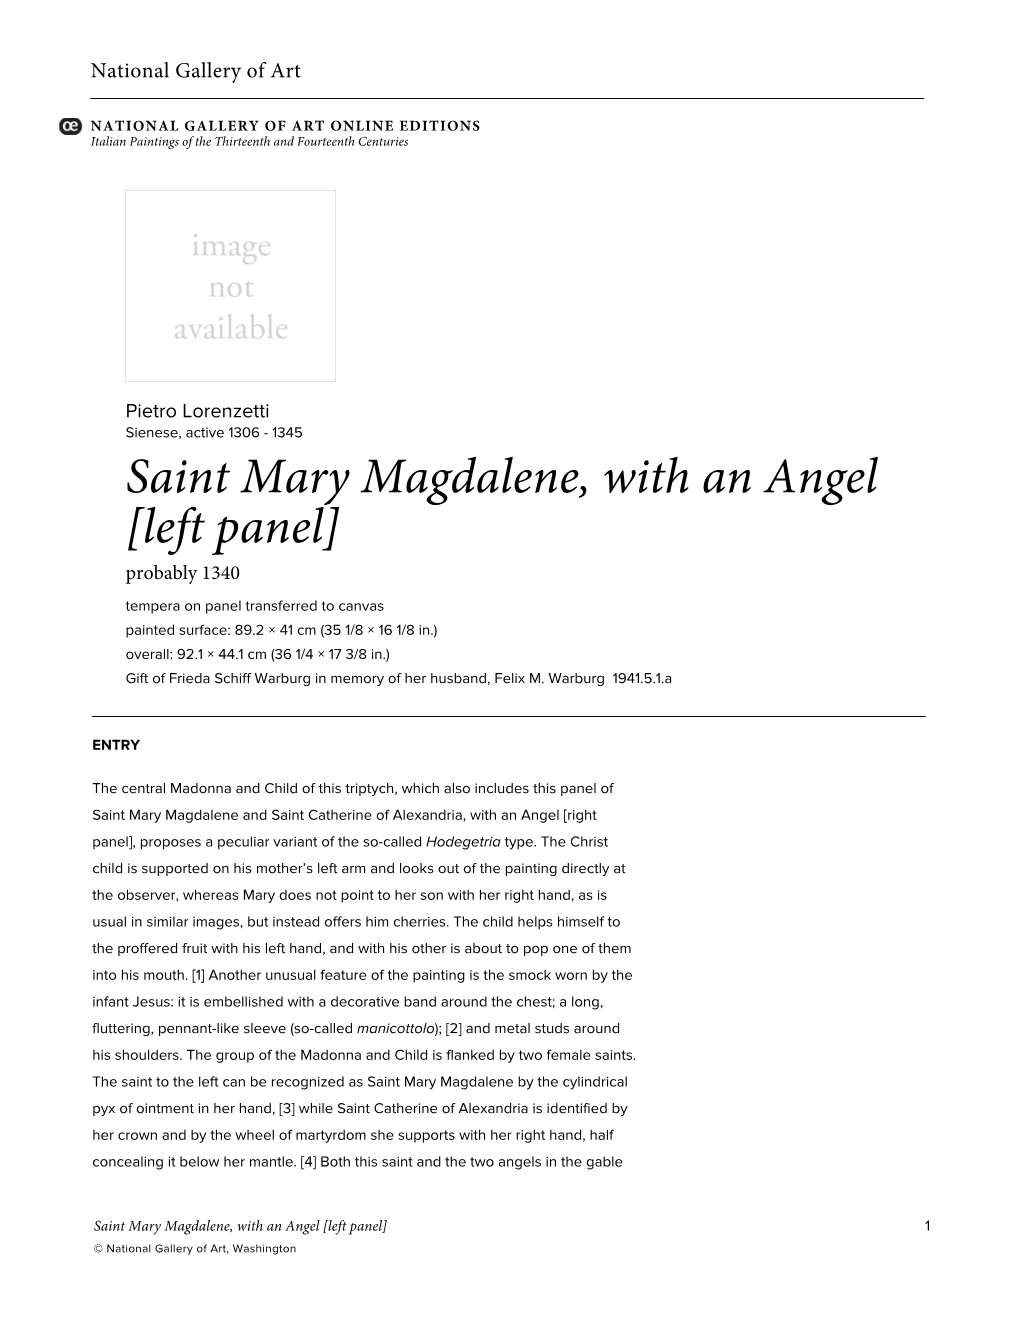 Saint Mary Magdalene, with an Angel